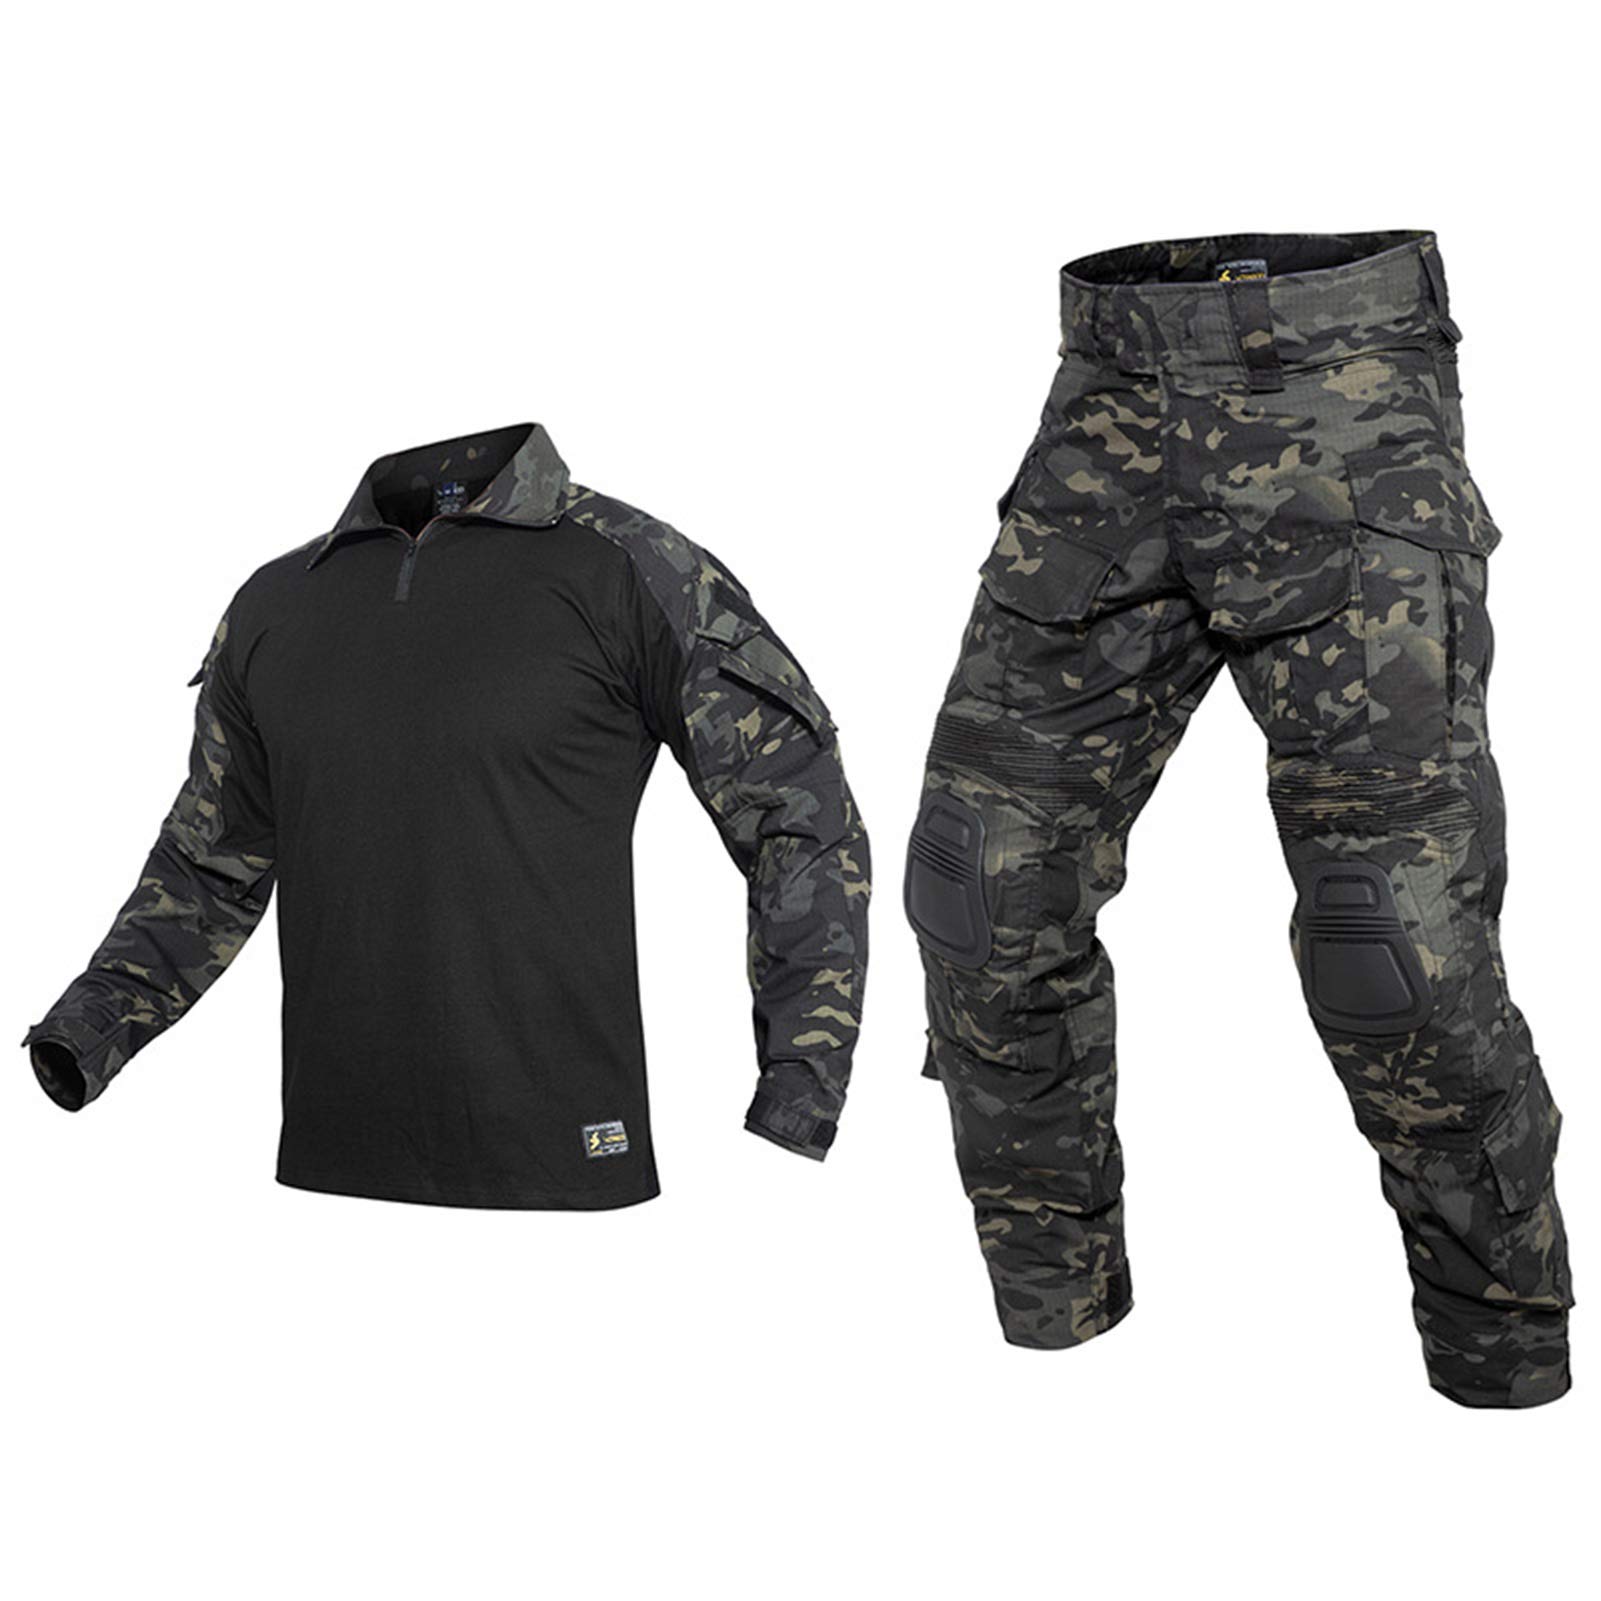 THWJSH Herren Military Tactical Suit Gentleman Tactical Long Sleeve Combat Shirt Training Military Outdoor Hose Combat Uniform für Outdoor Training Schwarz-S